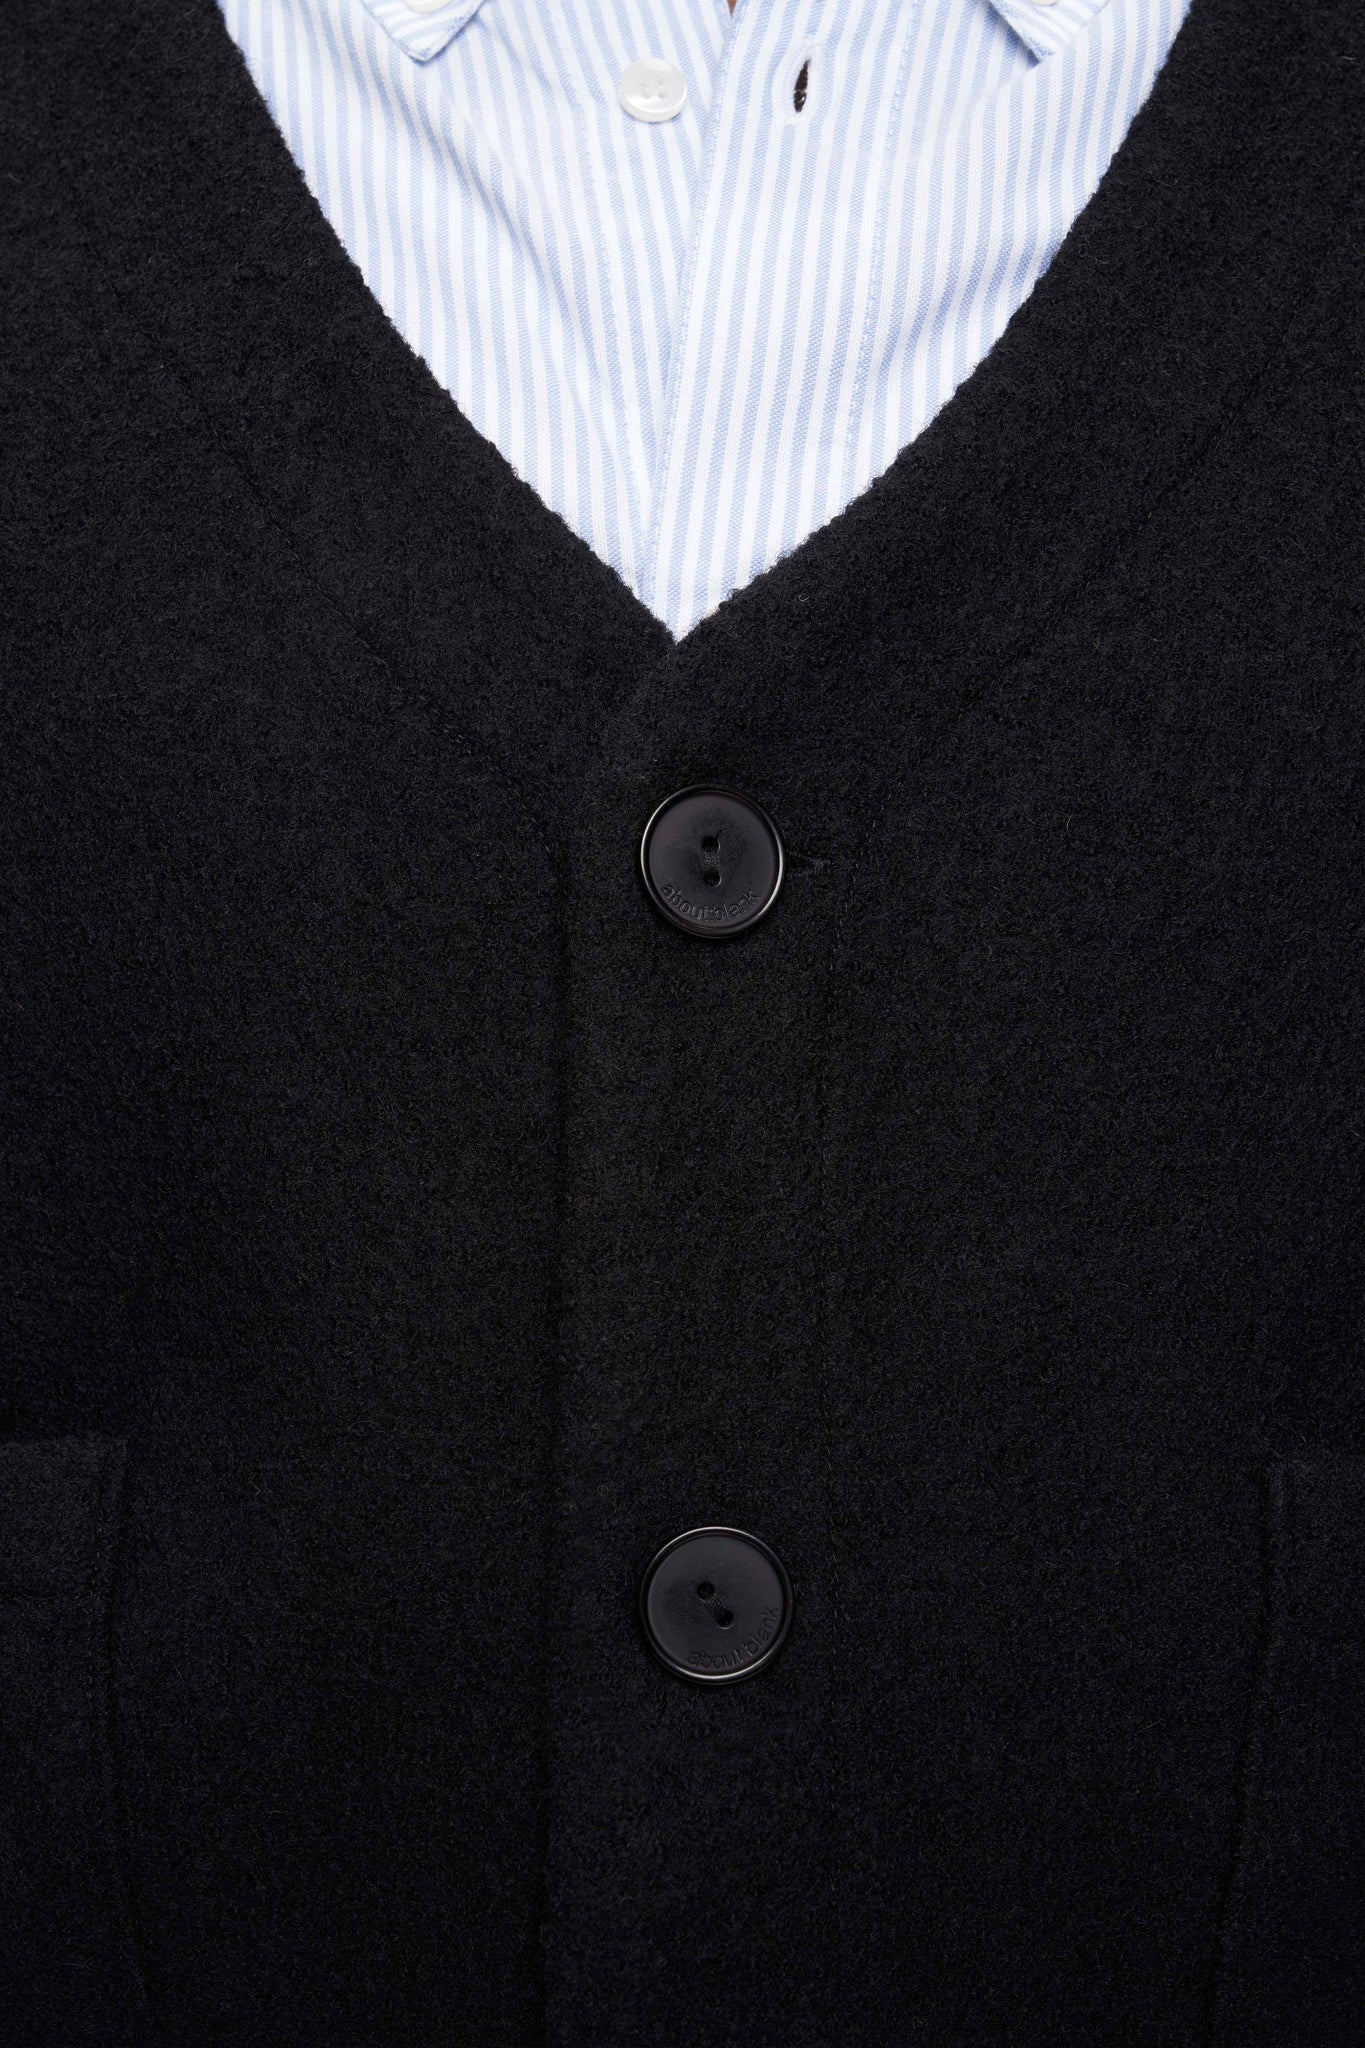 OG cropped wool cardigan black